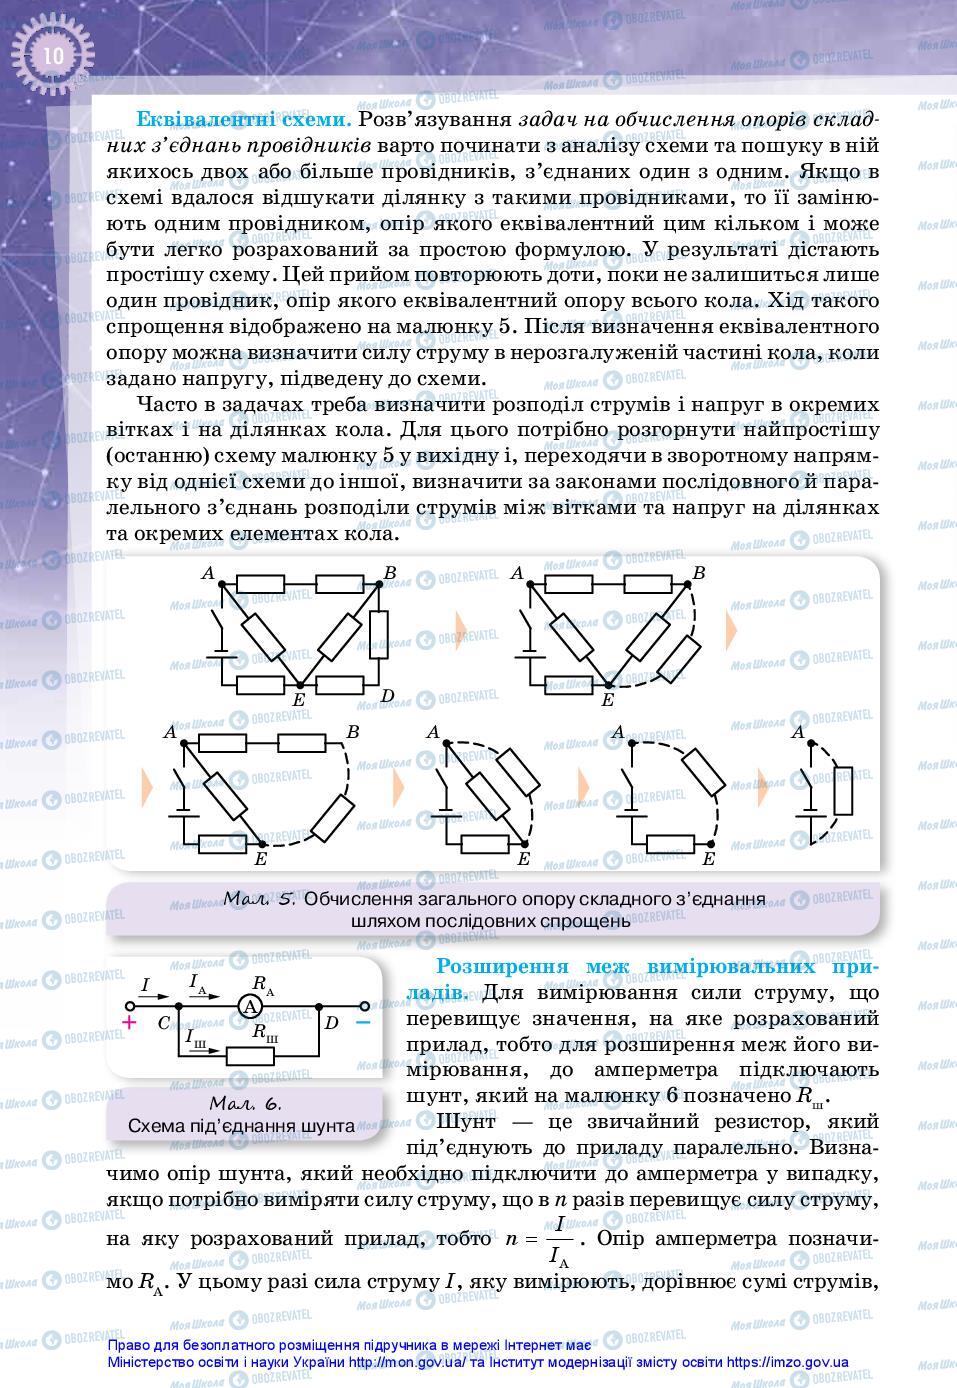 Підручники Фізика 11 клас сторінка 10